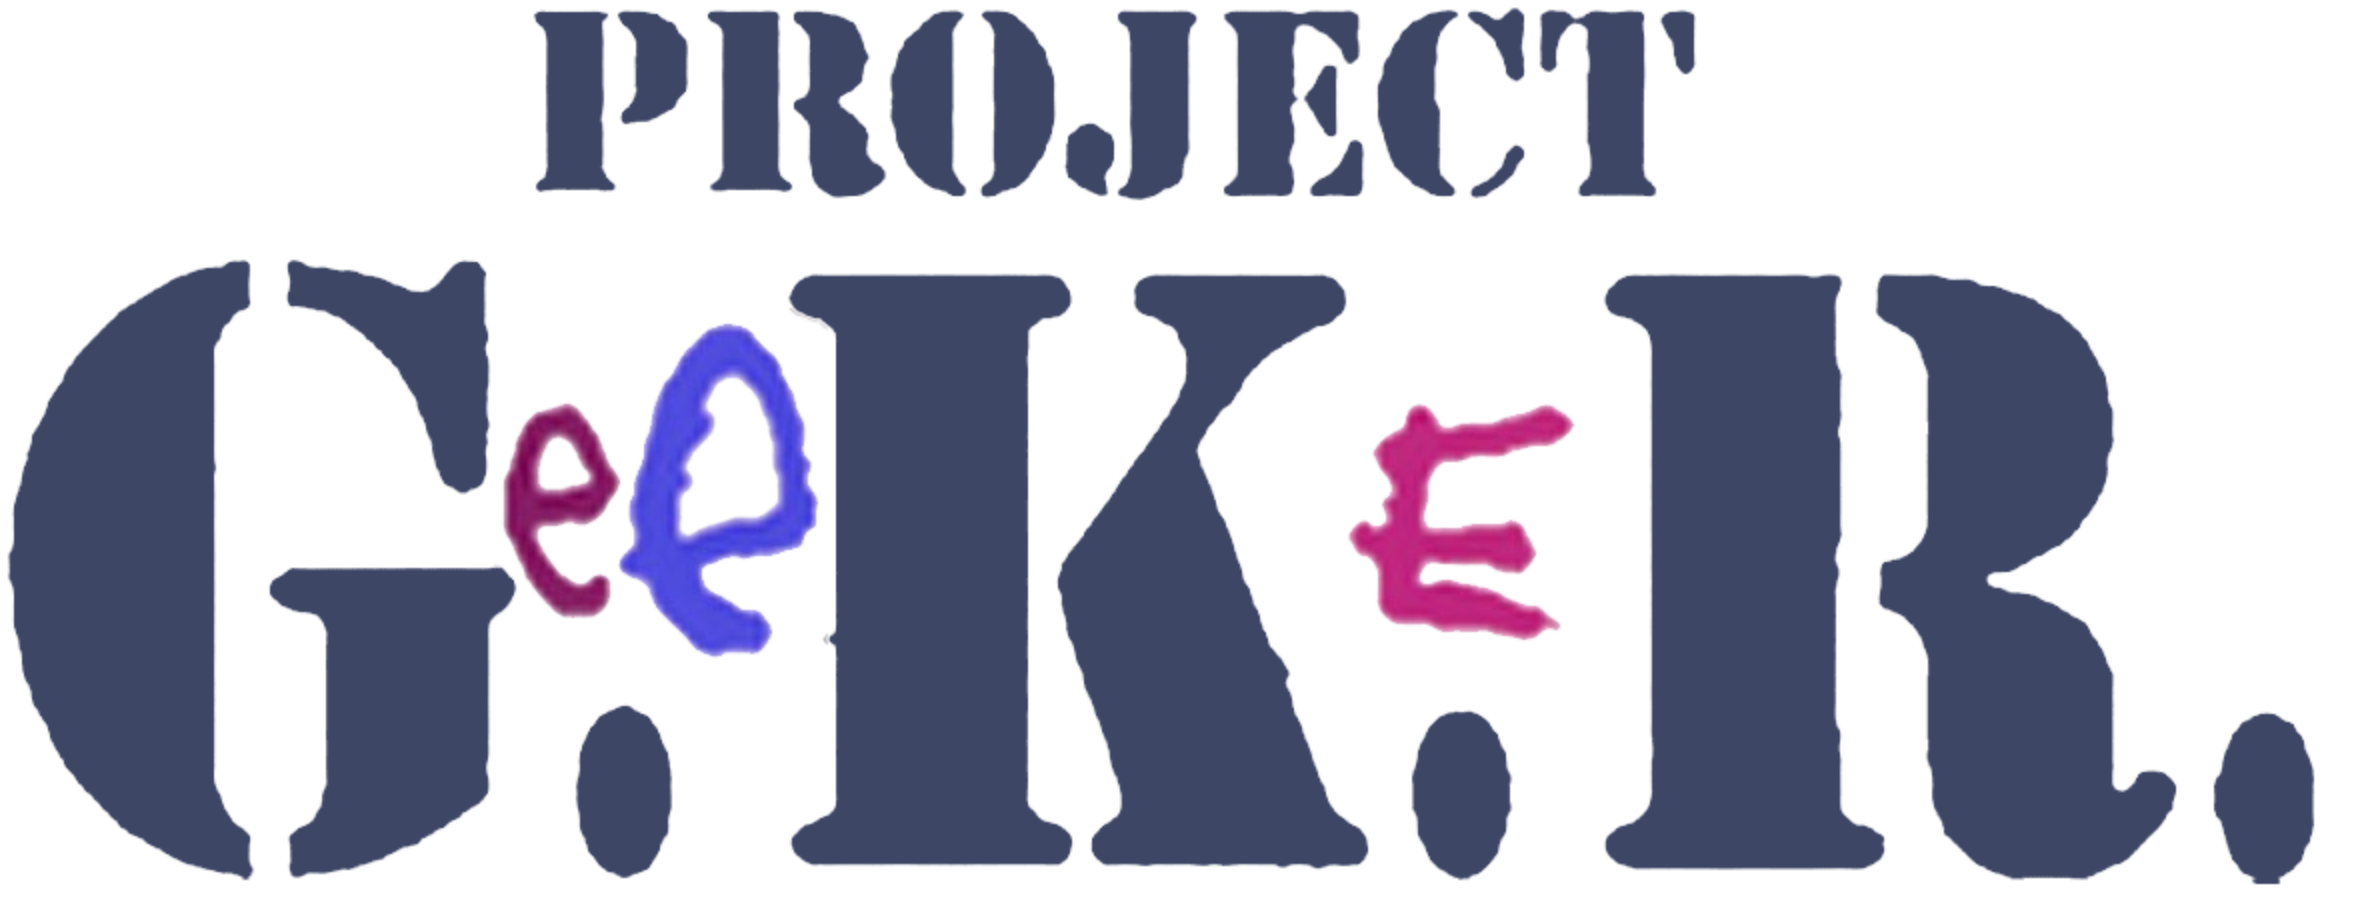 Project G.e.e.K.e.R 